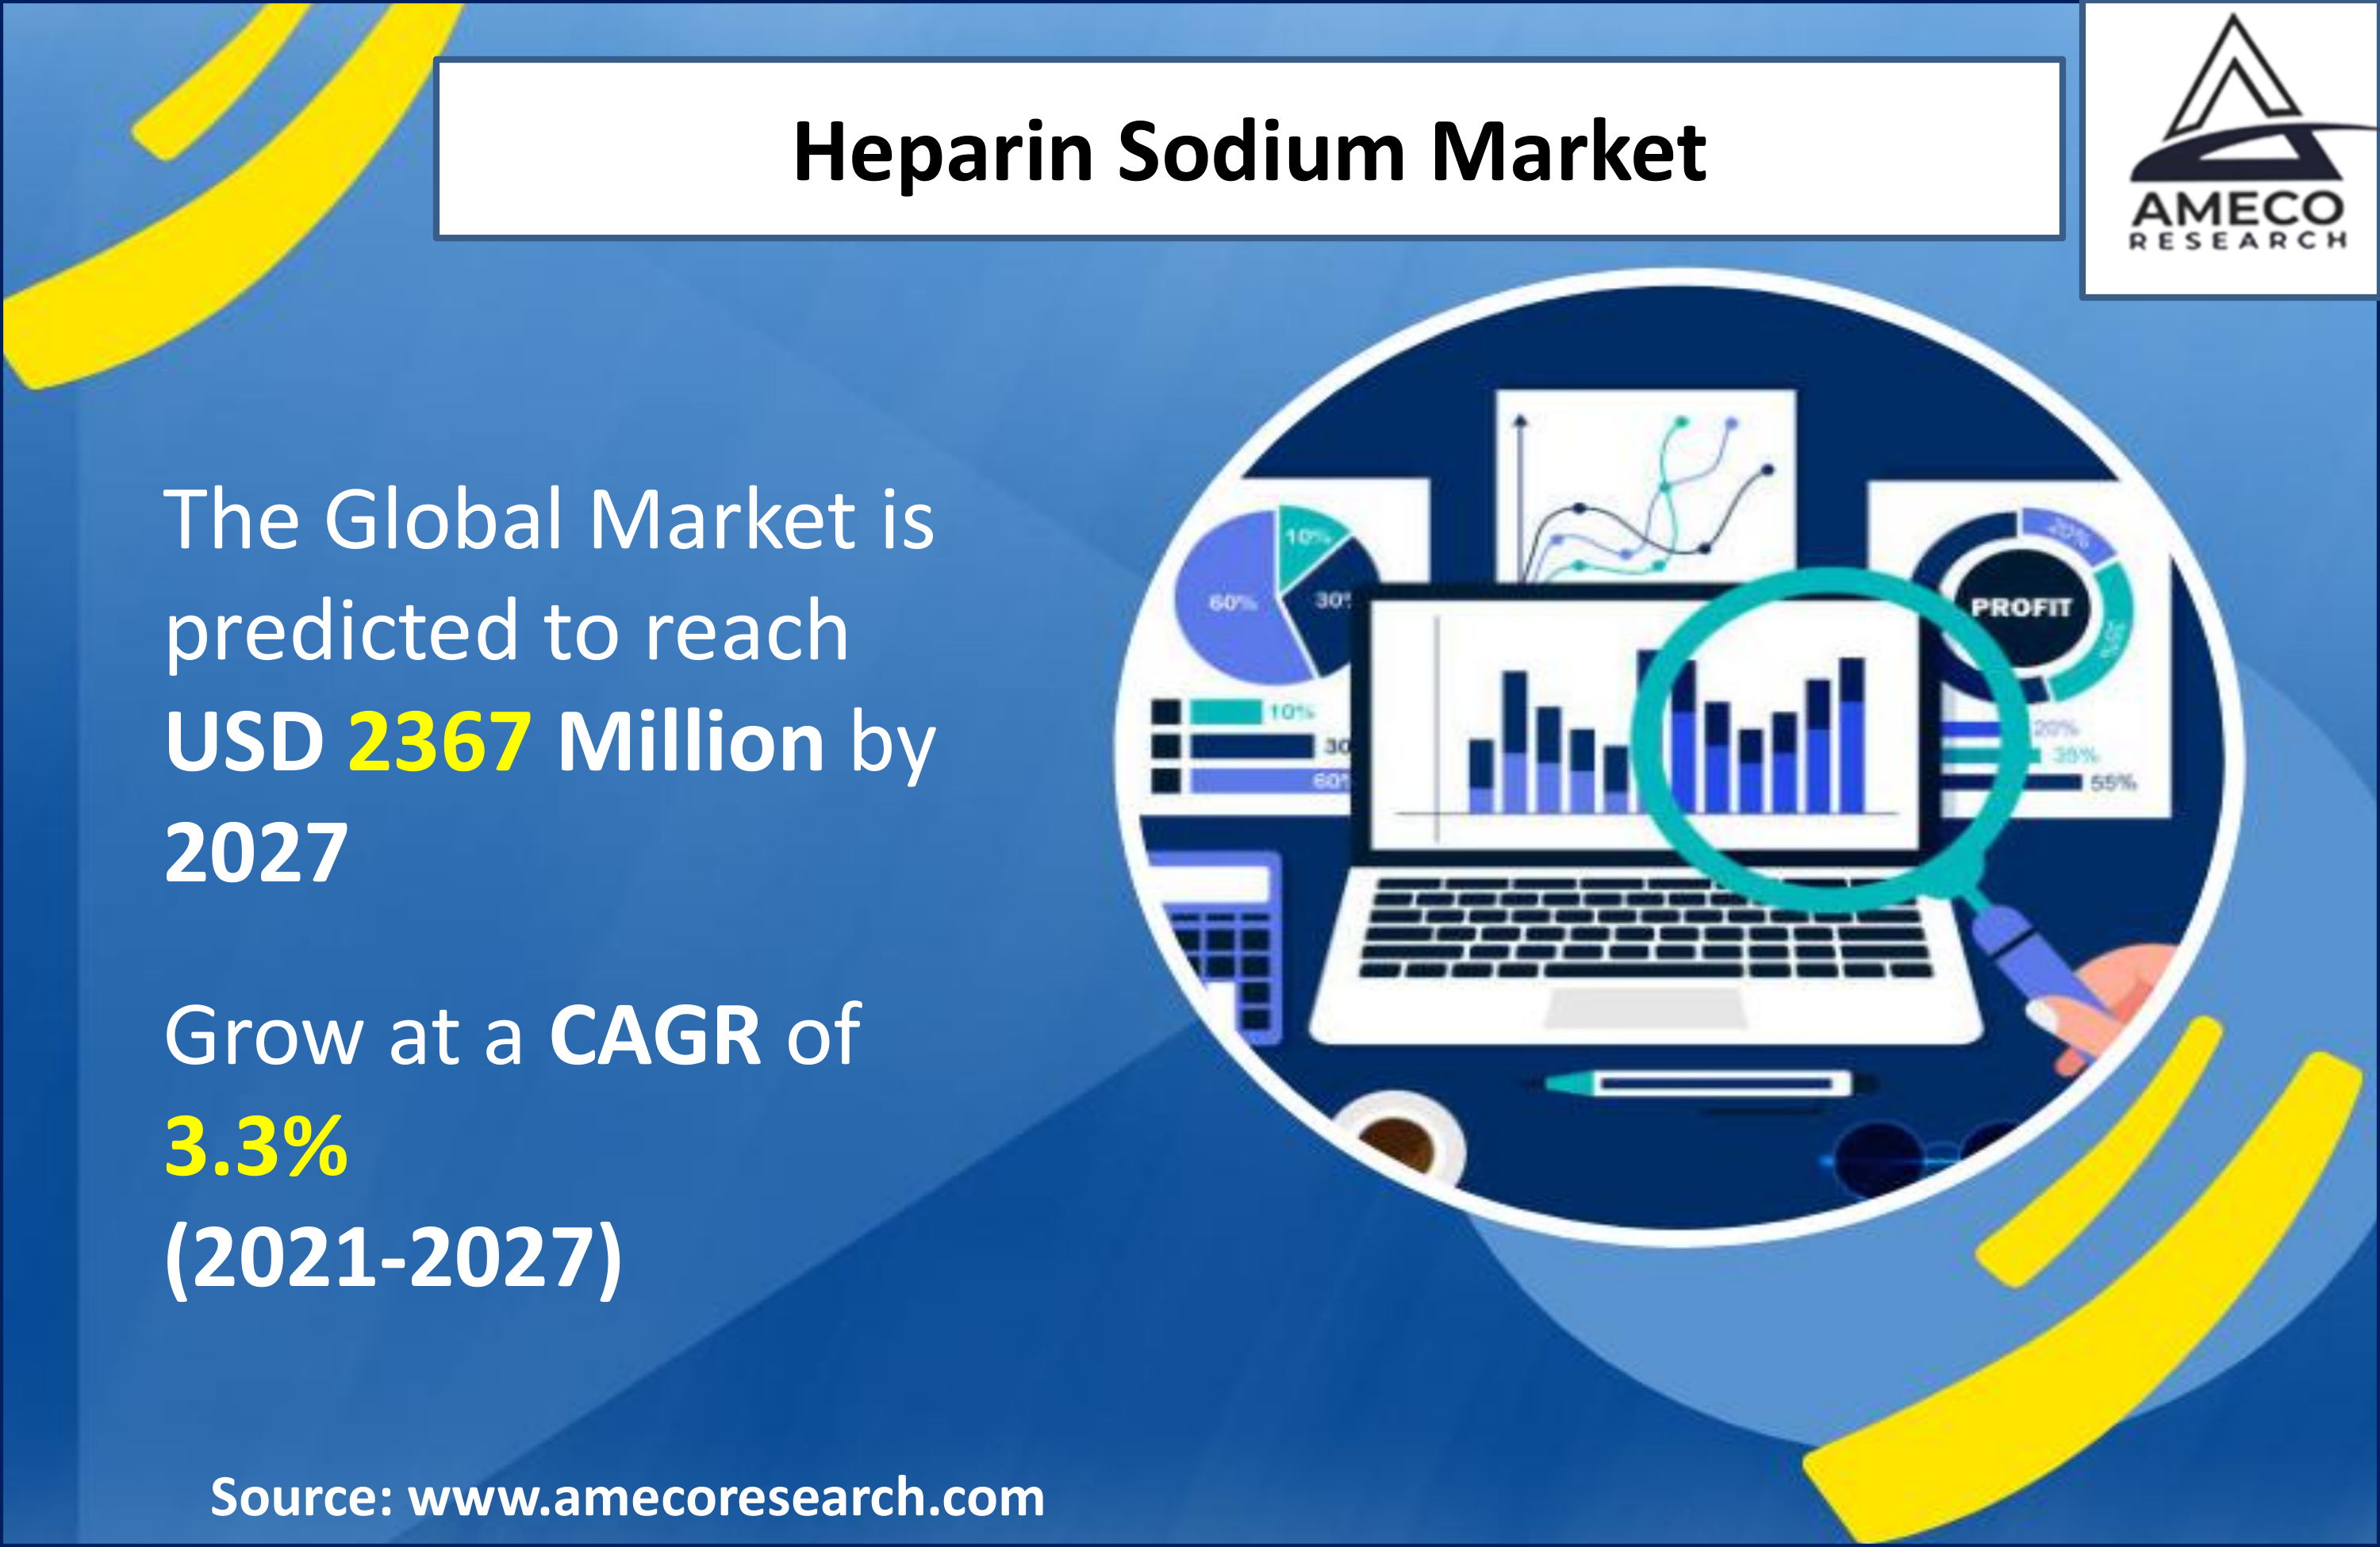 Heparin Sodium Market 